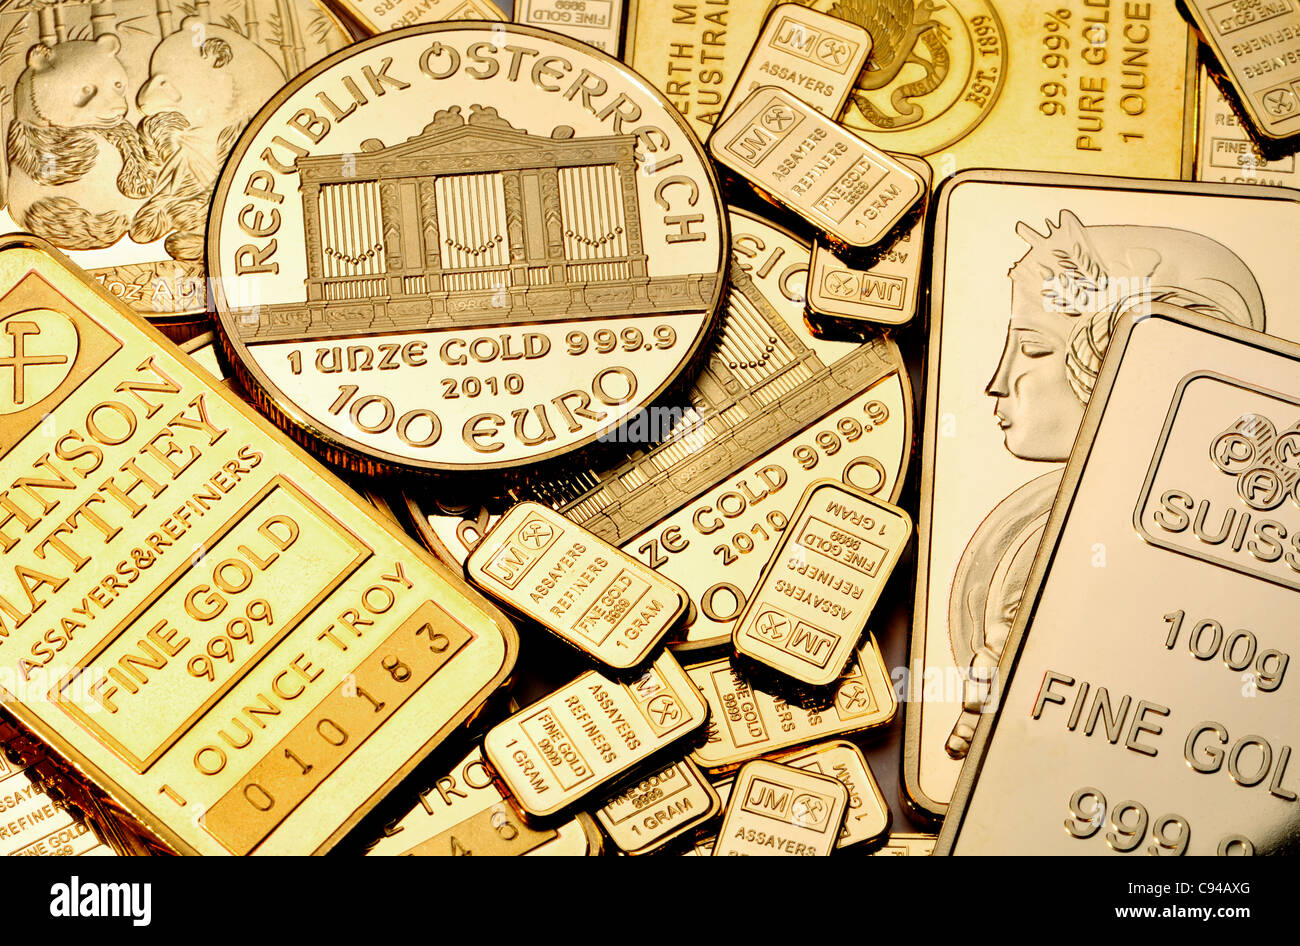 Gold Bullion - pièces et lingots / bars (répliques) plaqué or Banque D'Images